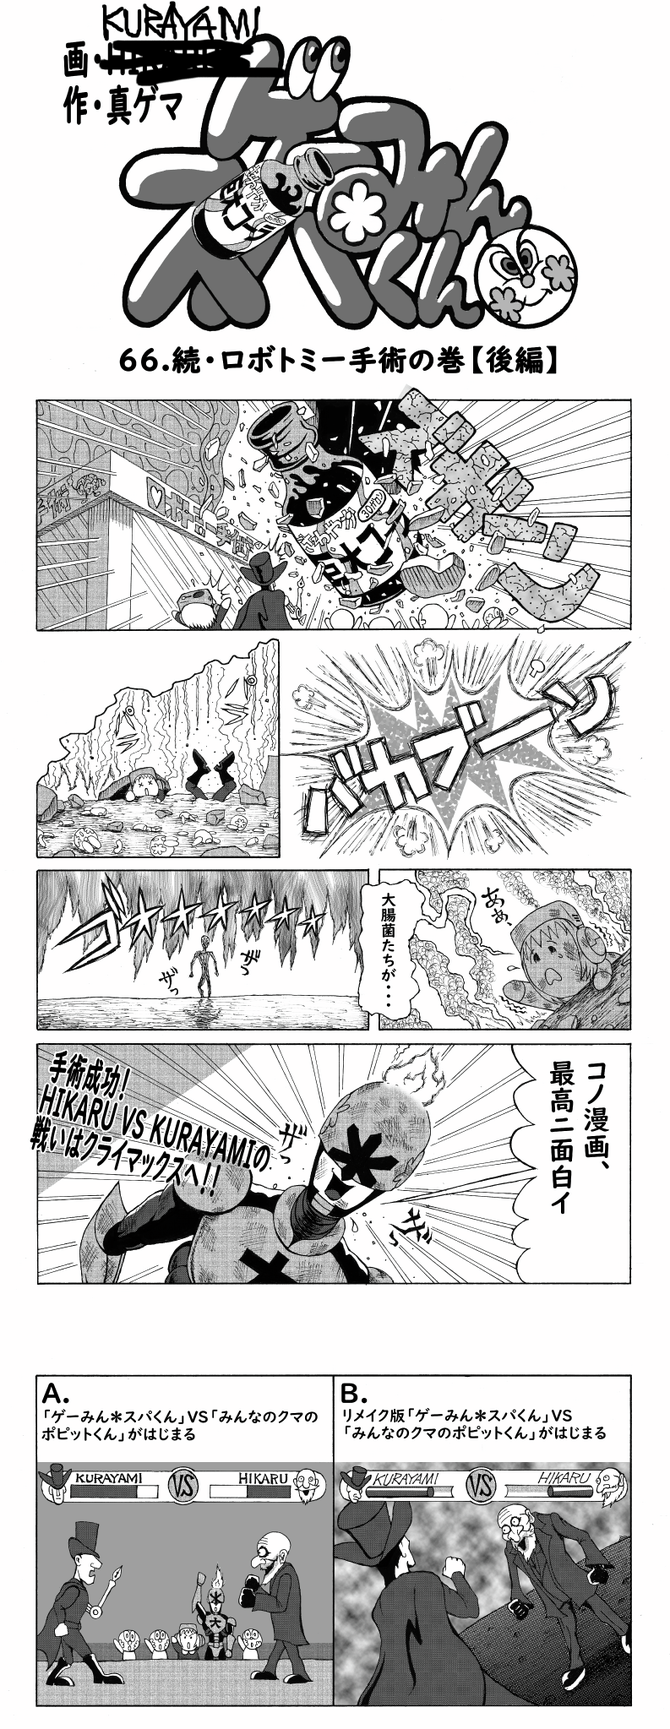 漫画ゲーみん スパくん 続 ロボトミー手術 の巻 66 Game Spark 国内 海外ゲーム情報サイト